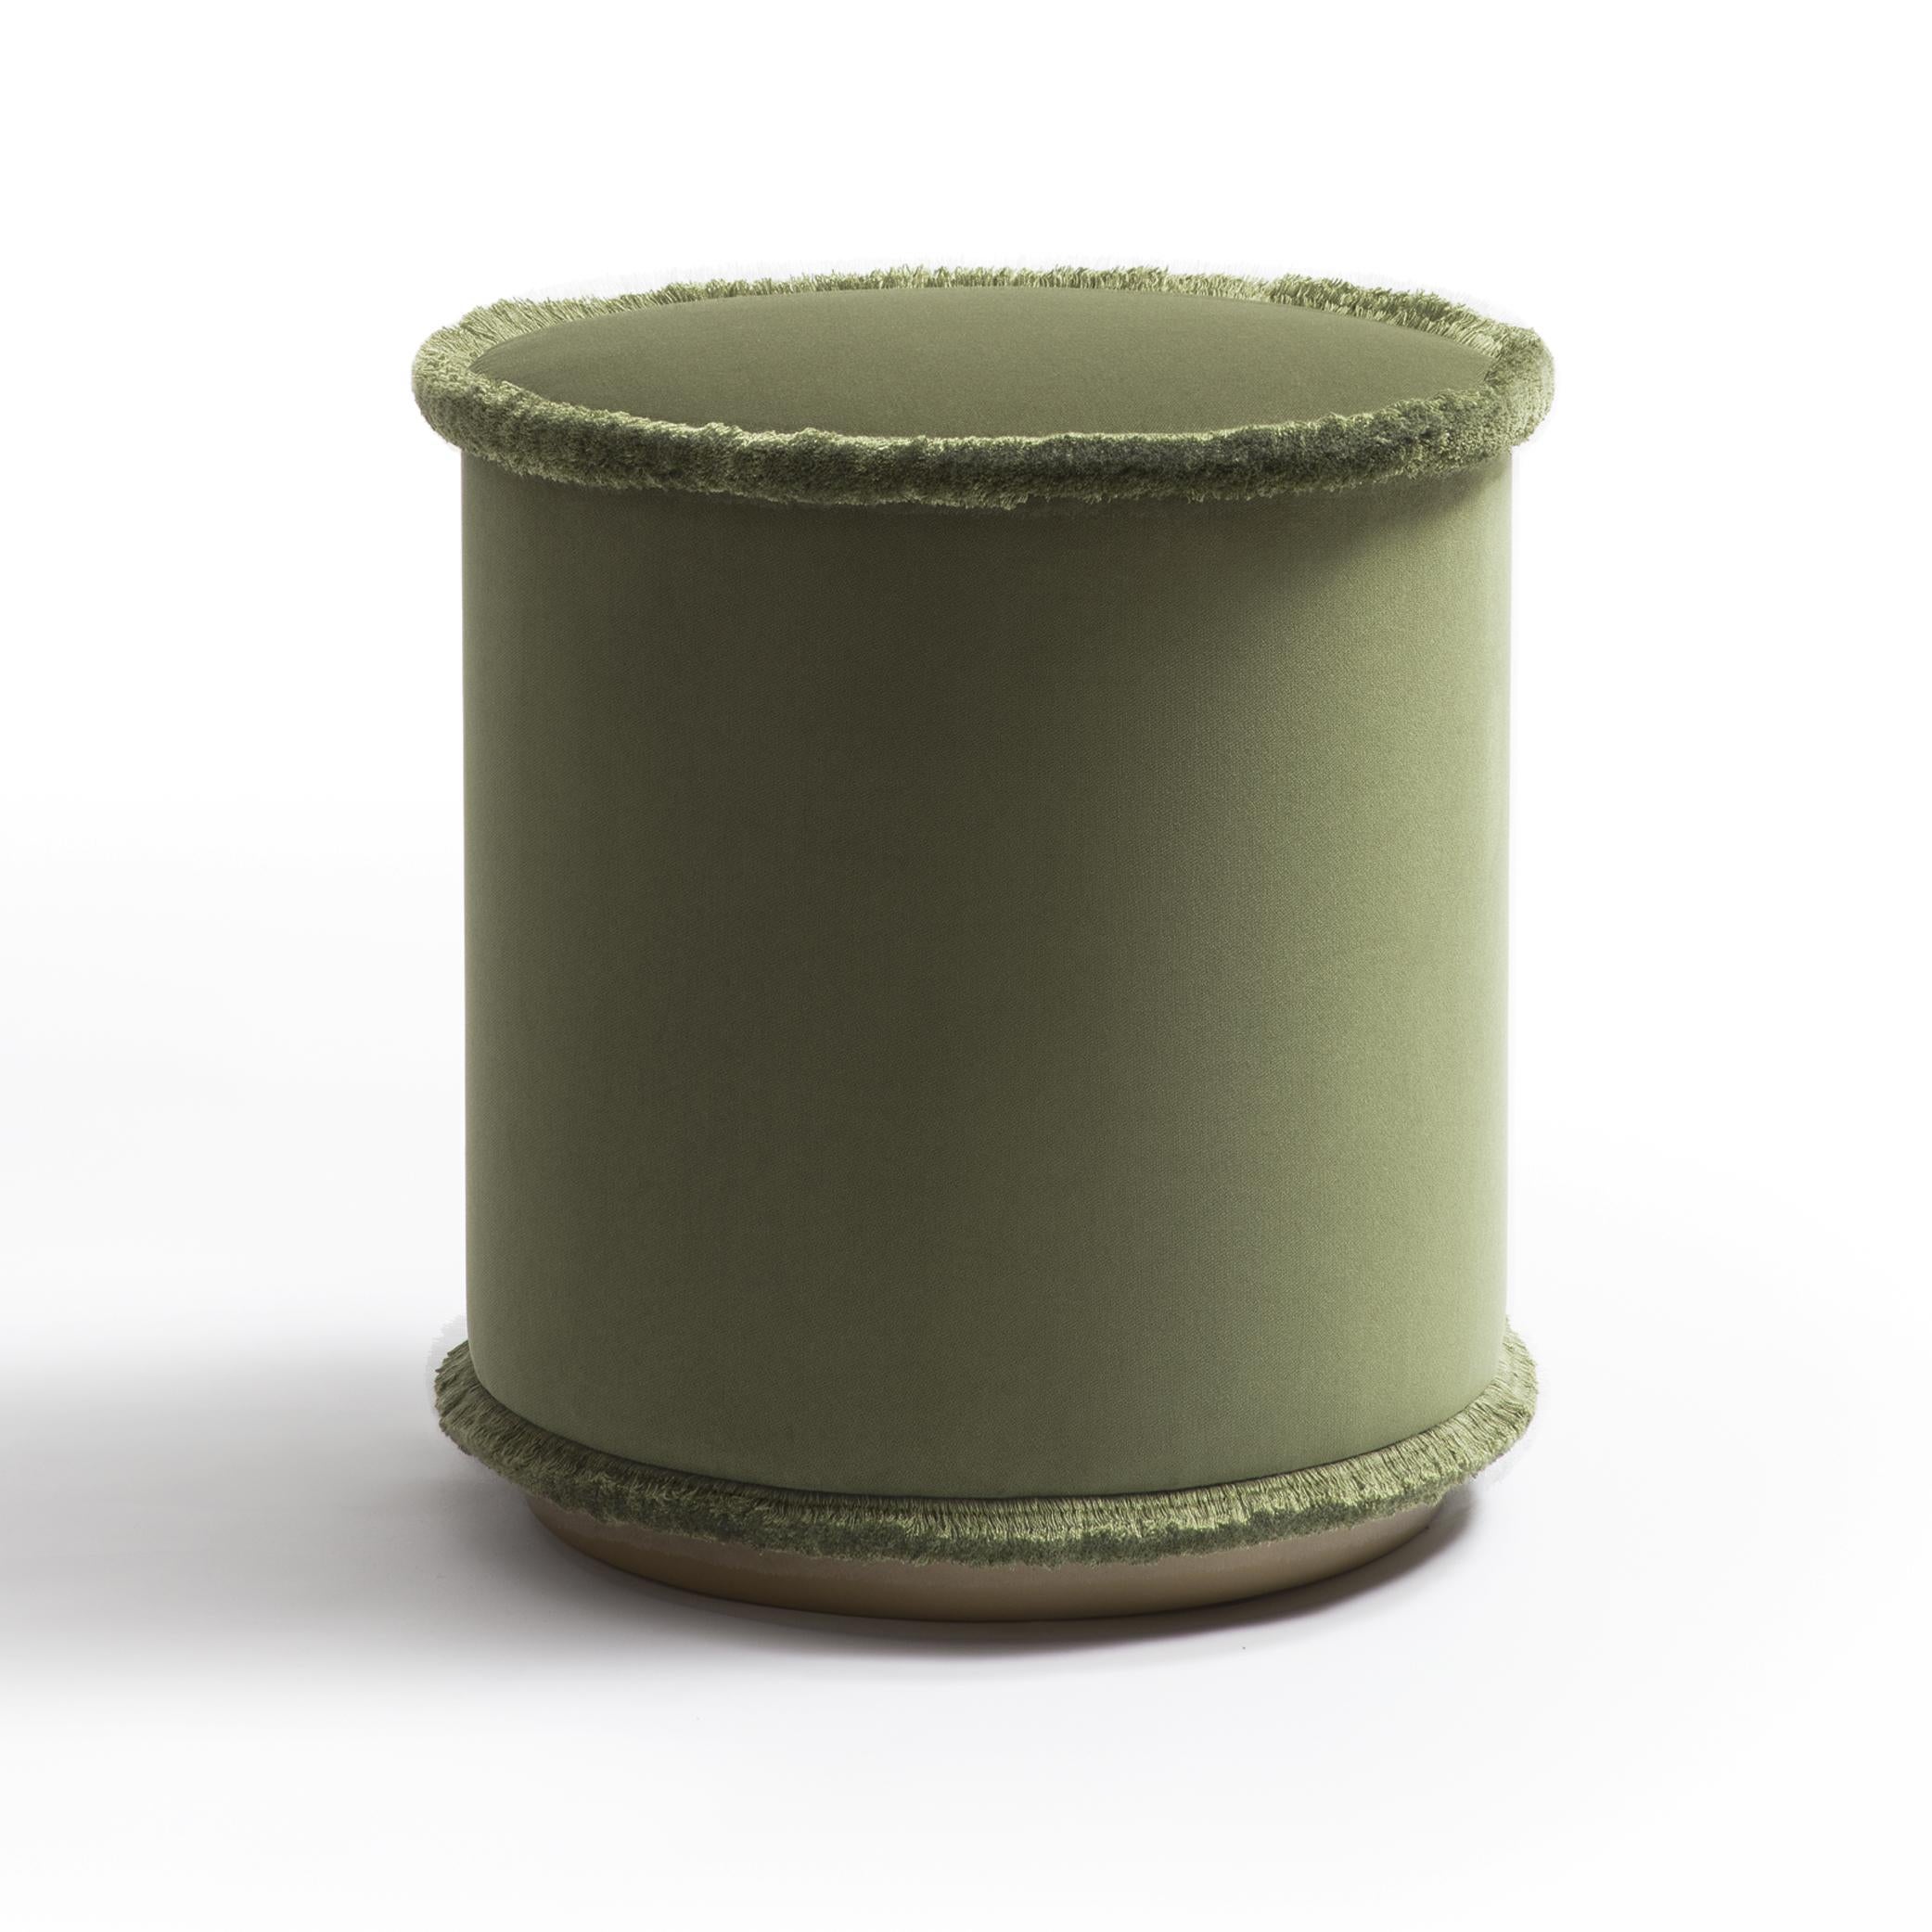 IL Pouf  Tone on Tone ist die Pouf-Kollektion in den Farbtönen Grün, Ziegelstein, Senf und Beige. Diese raffinierten Hocker verschönern jede Umgebung mit ihrem einfachen und kompakten Design. Der IL Pouf ist mit weichem Samt gepolstert, der mit